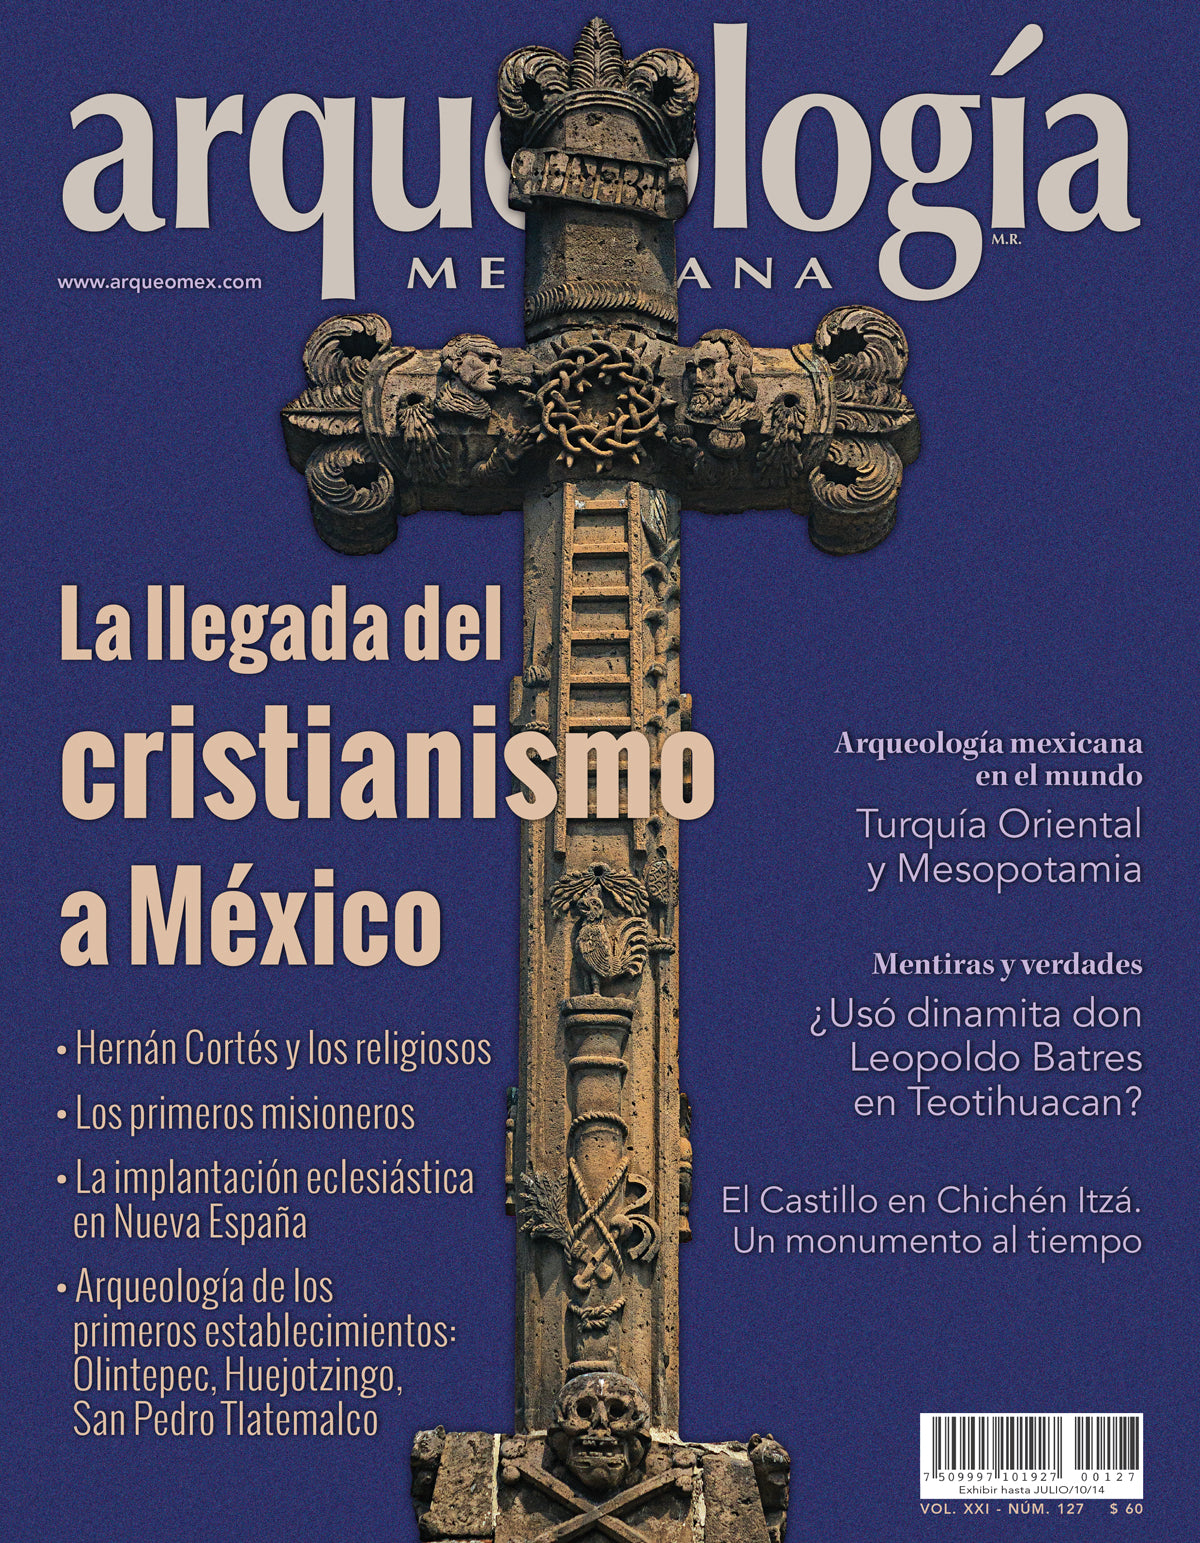 La llegada del cristianismo a México